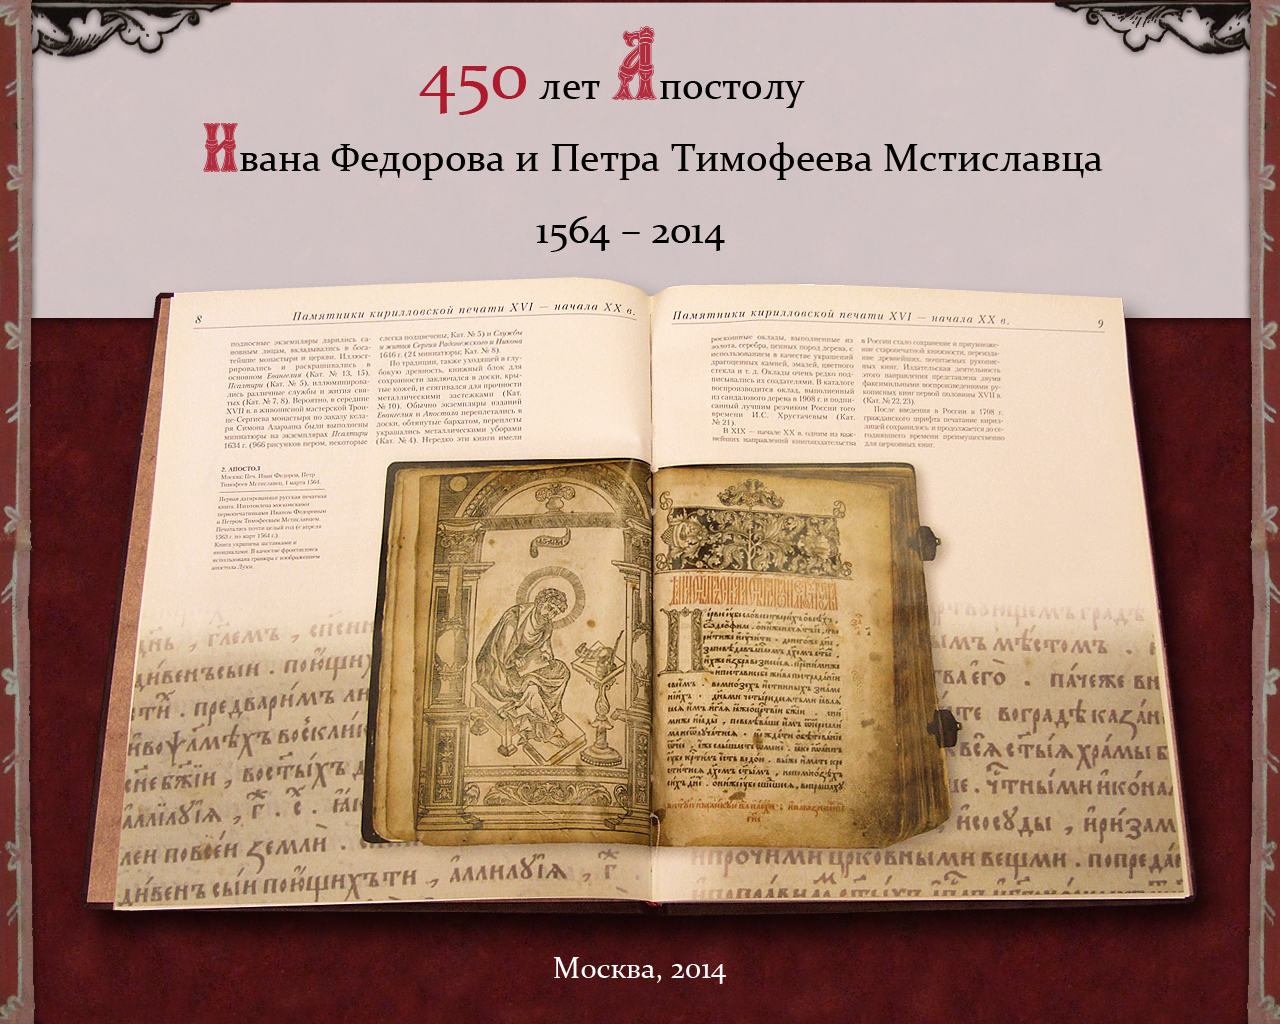 Апостол книга 1564 год - издание Иваном Федоровым в Москве